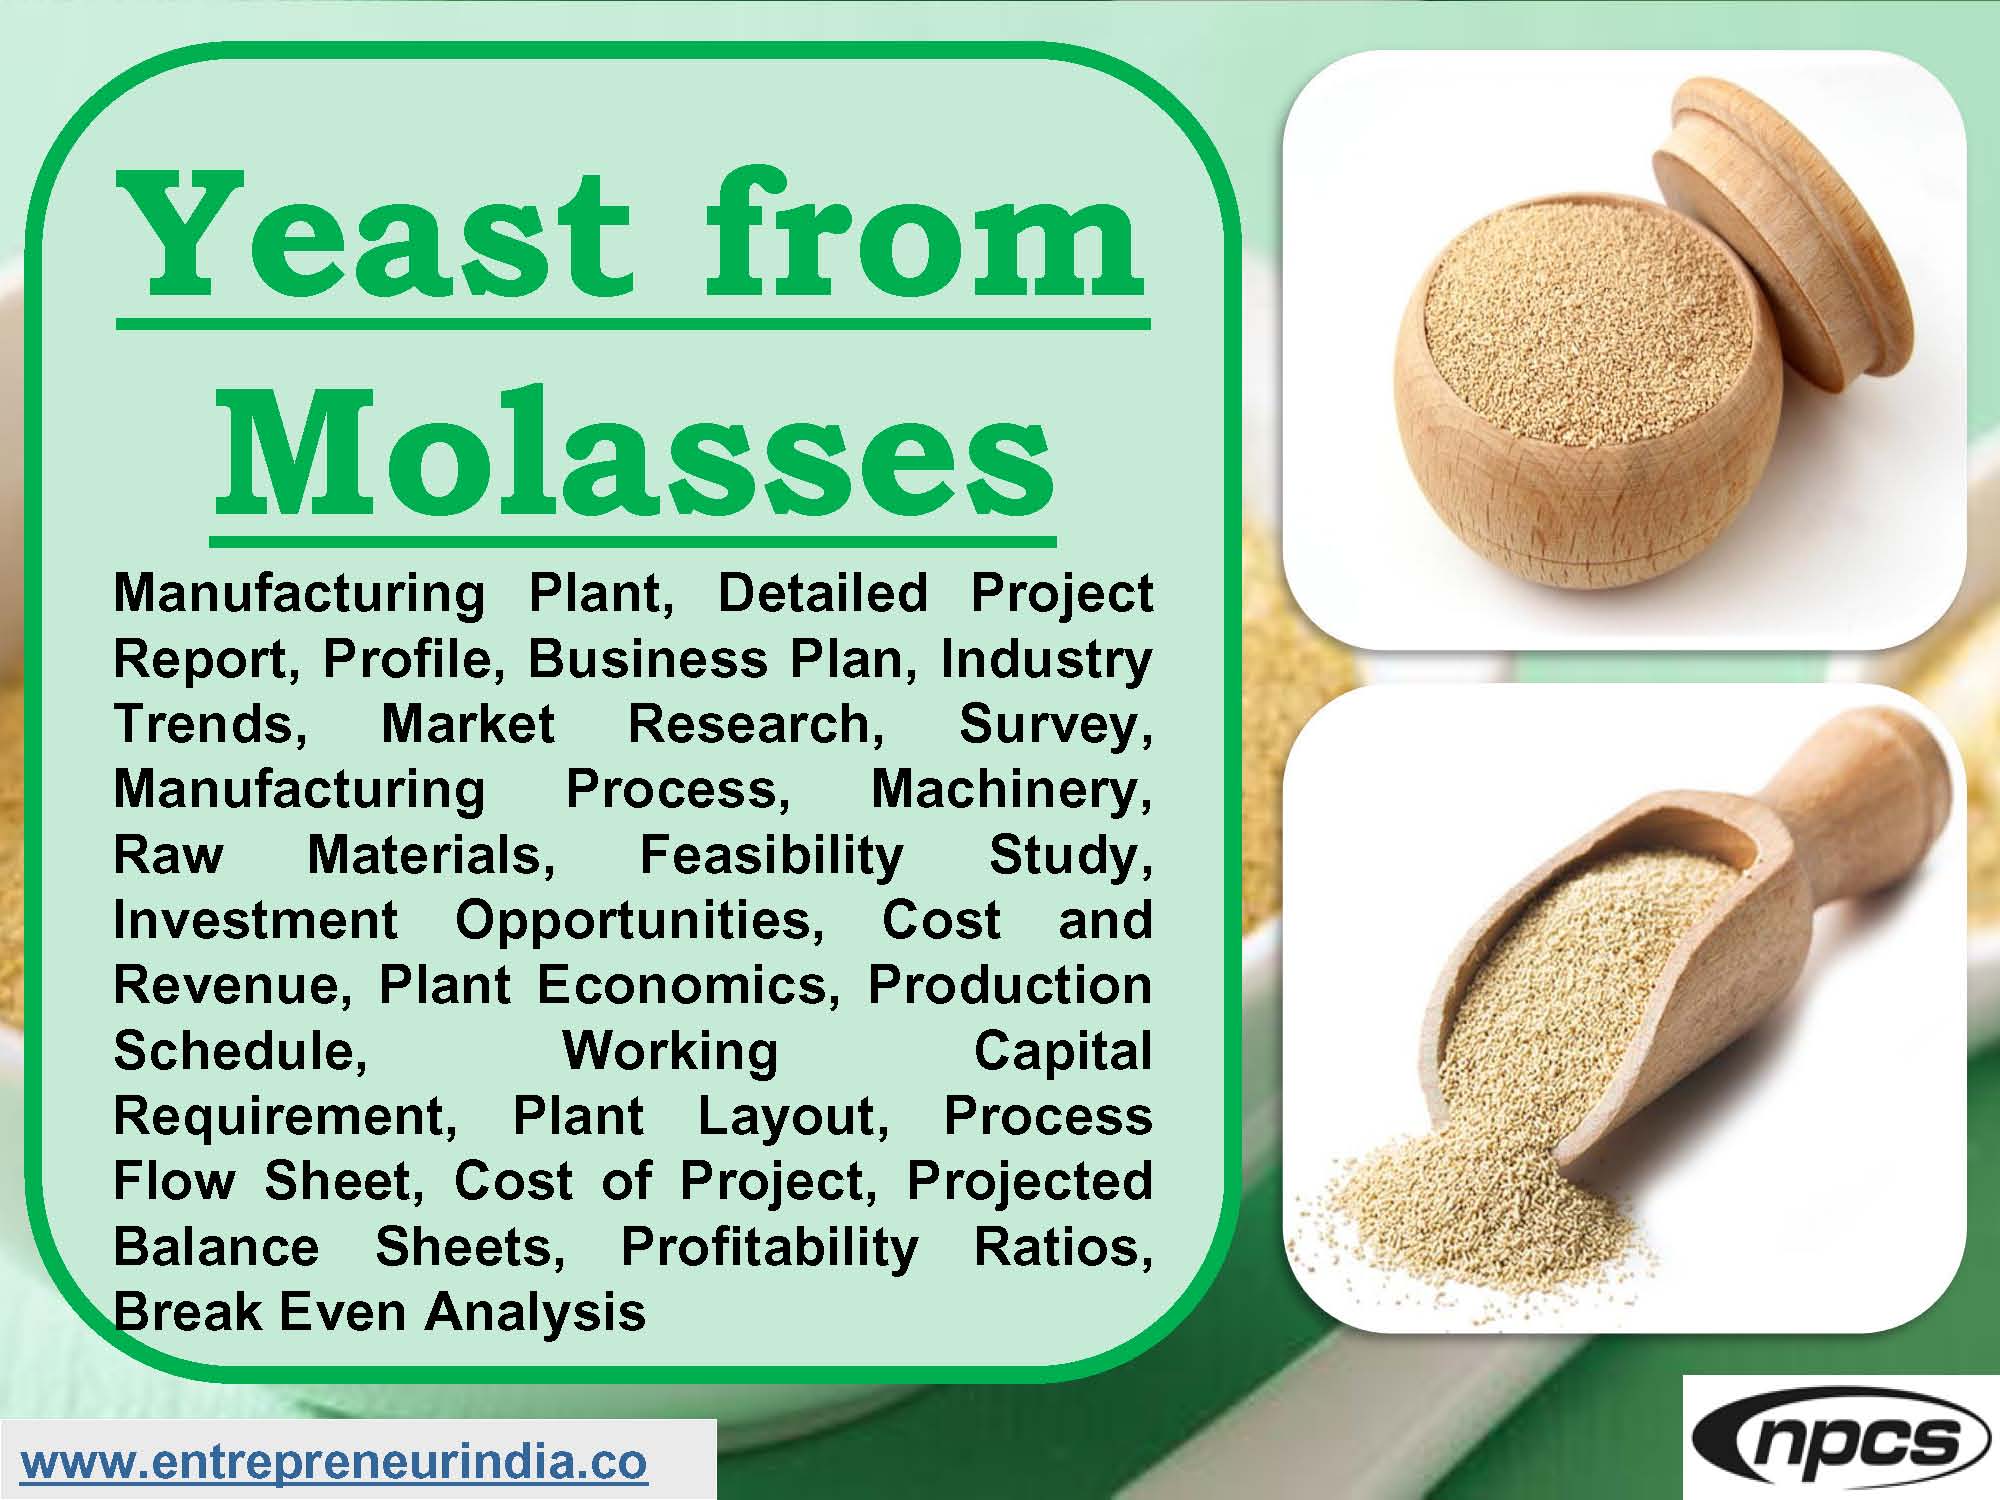 Yeast from Molasses.jpg